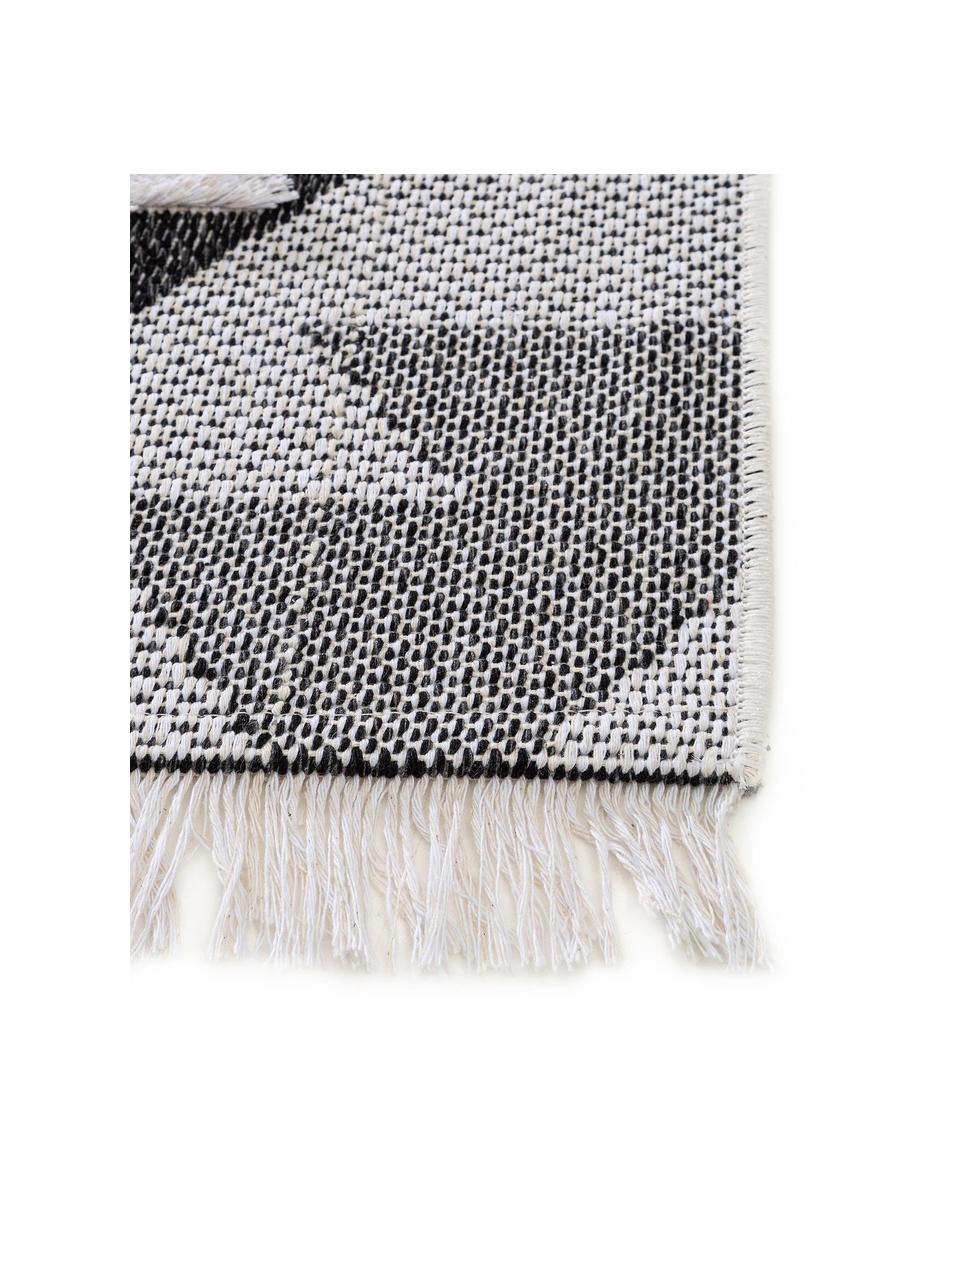 Waschbarer Ethno Baumwollteppich Oslo Aztec mit Hoch-Tief-Muster, 100% Baumwolle, Cremeweiß, Grautöne, B 150 x L 230 cm (Größe M)